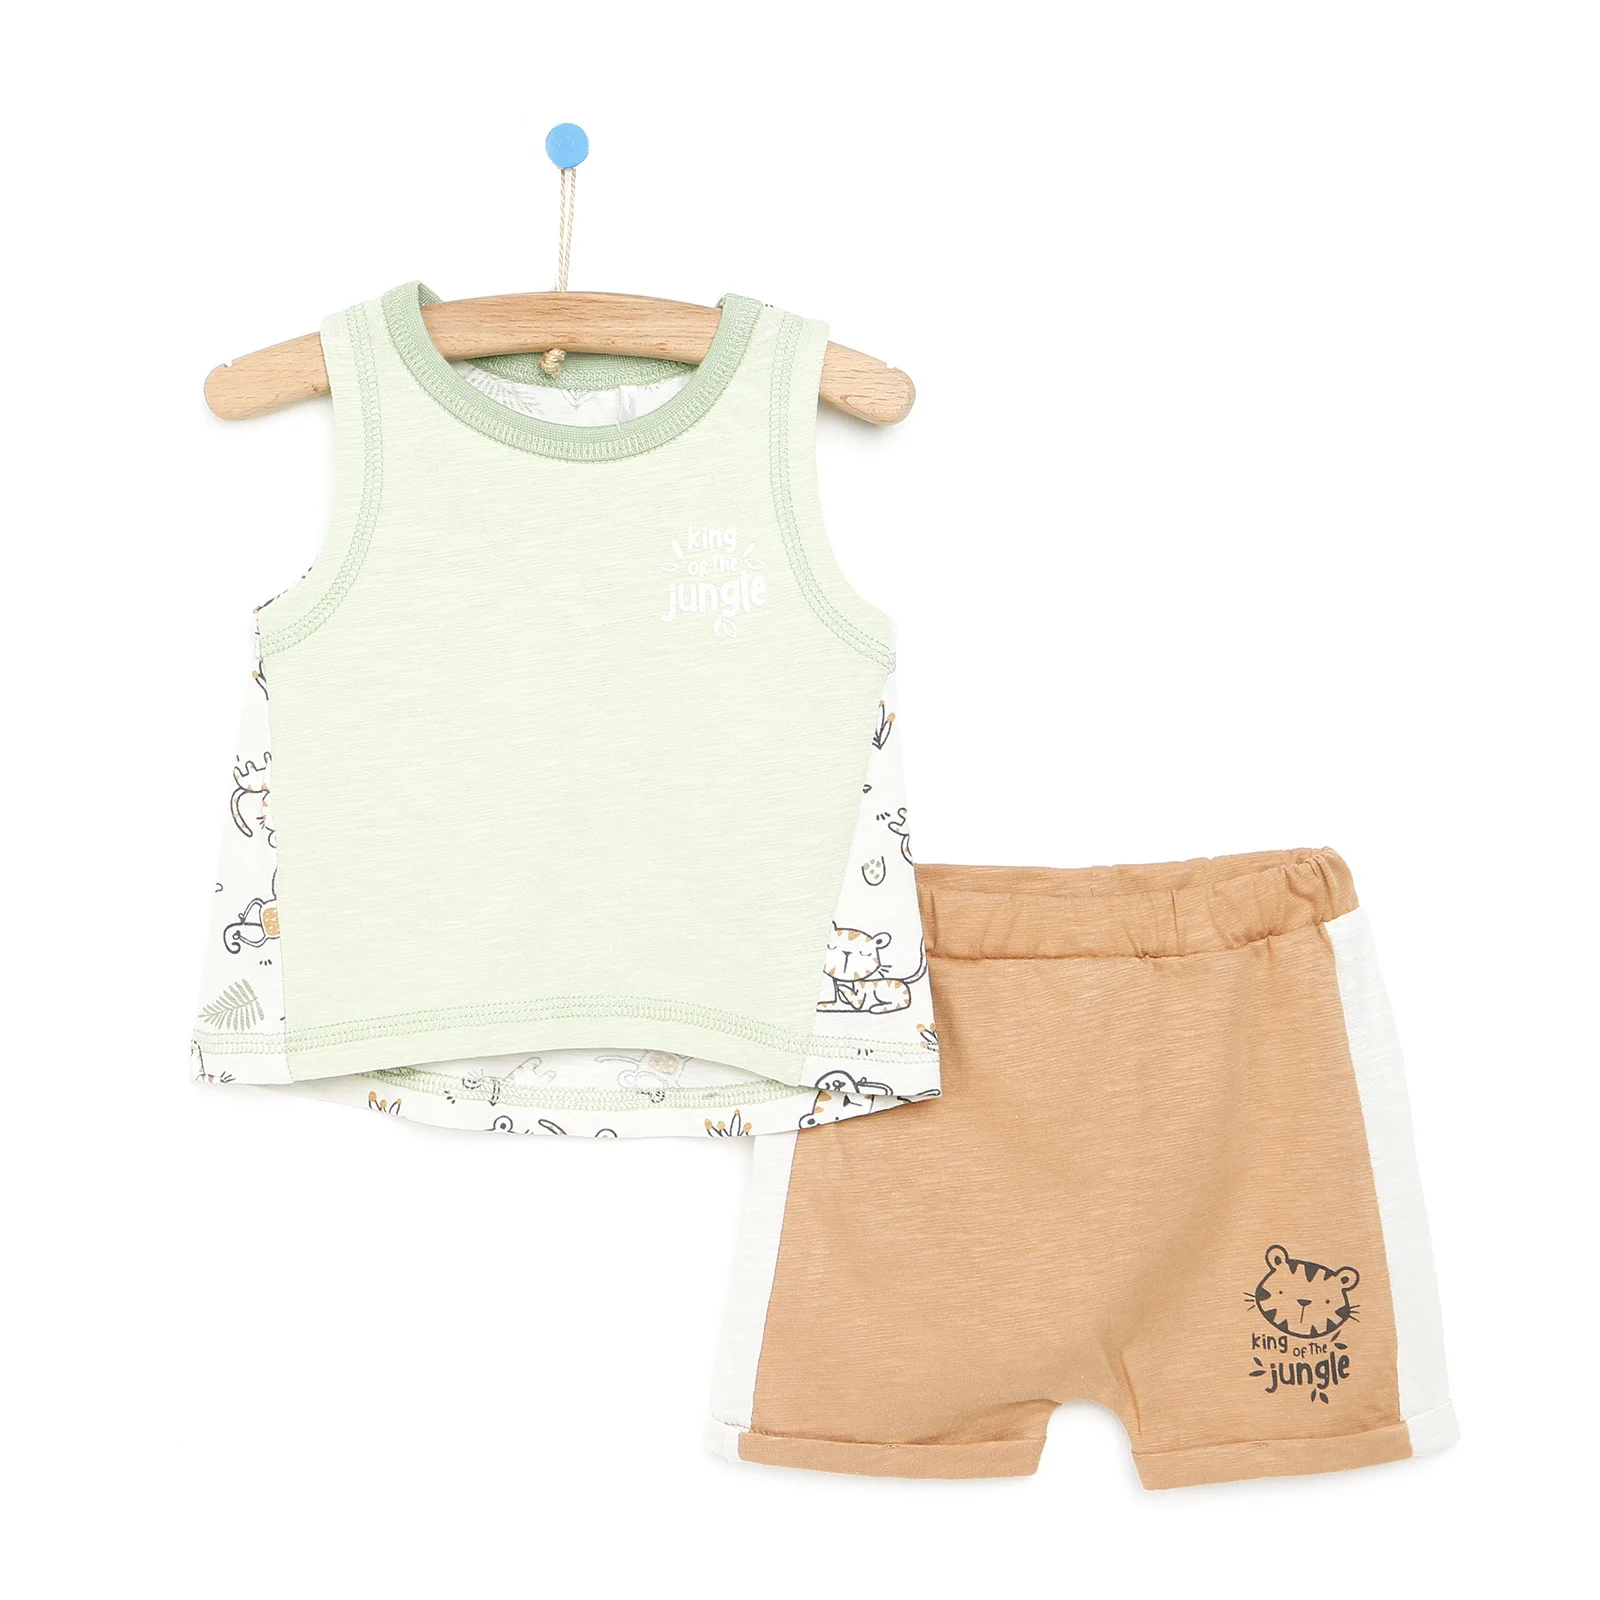 

ebebek HelloBaby 2022 New Season Baby Clothes Little Tiger Erkek Bebek Kolsuz Modelli Tshirt - Baskılı Şort